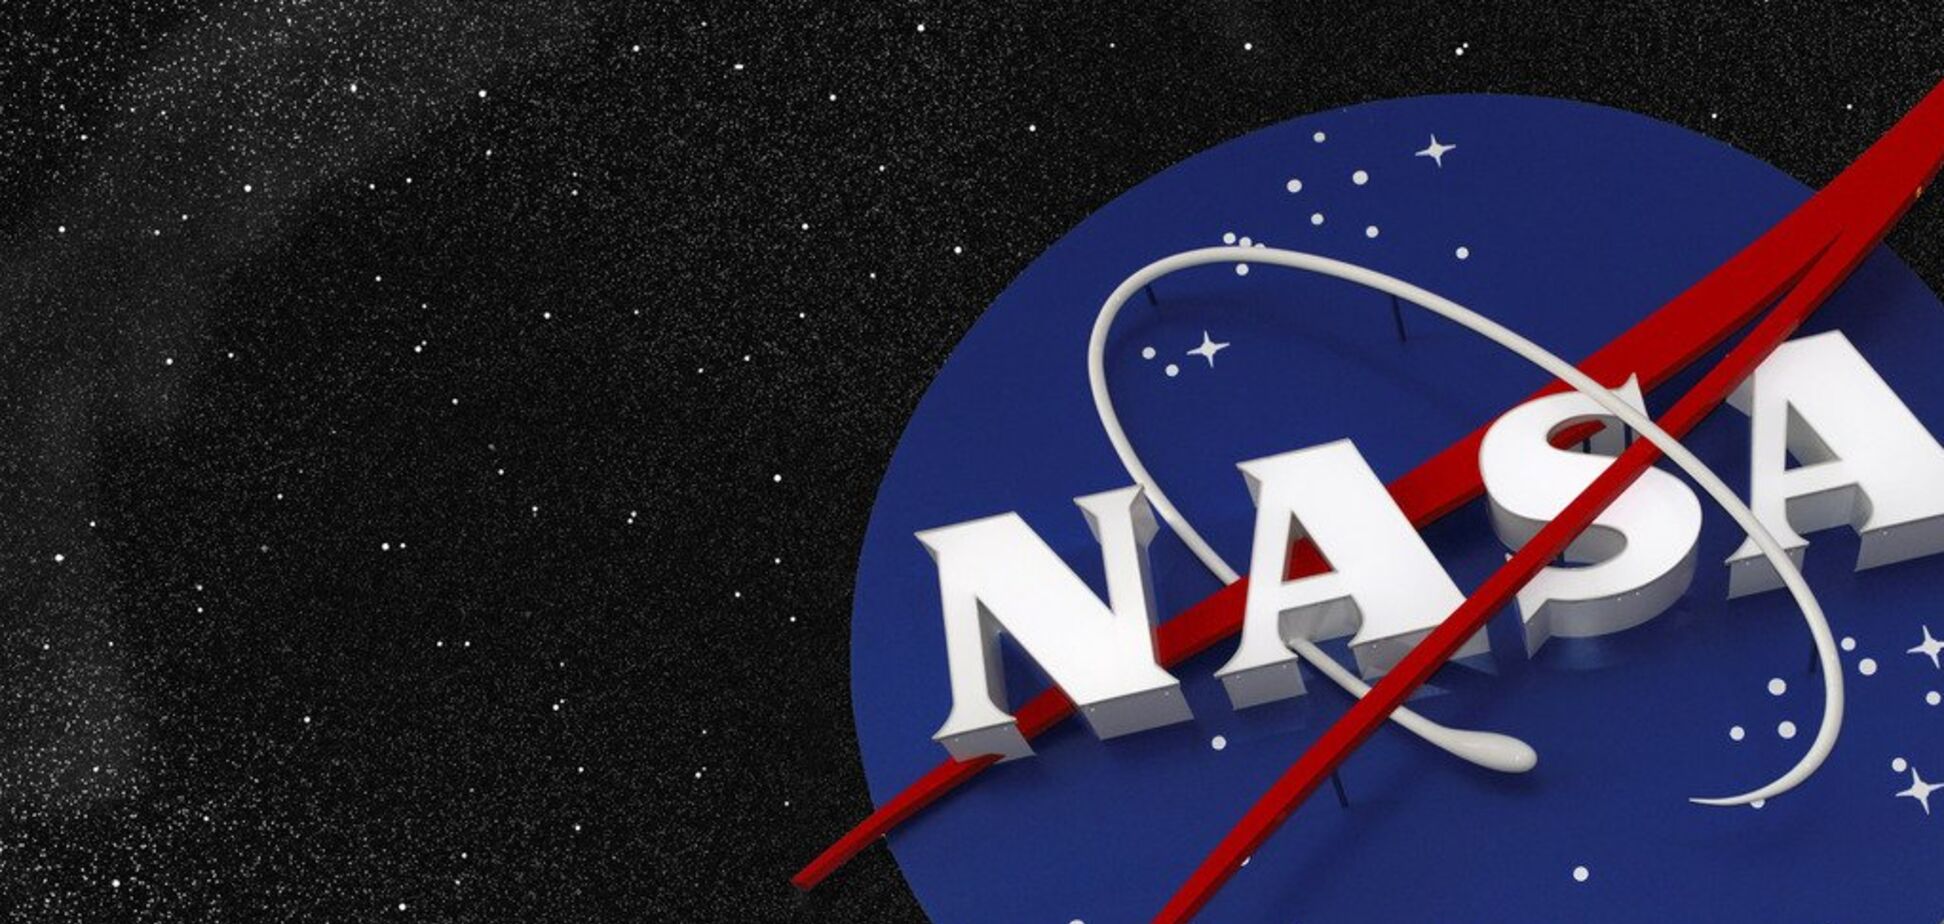 Тыква в космосе: в NASA обнаружили символ Хэллоуина на краю галактики. Фото